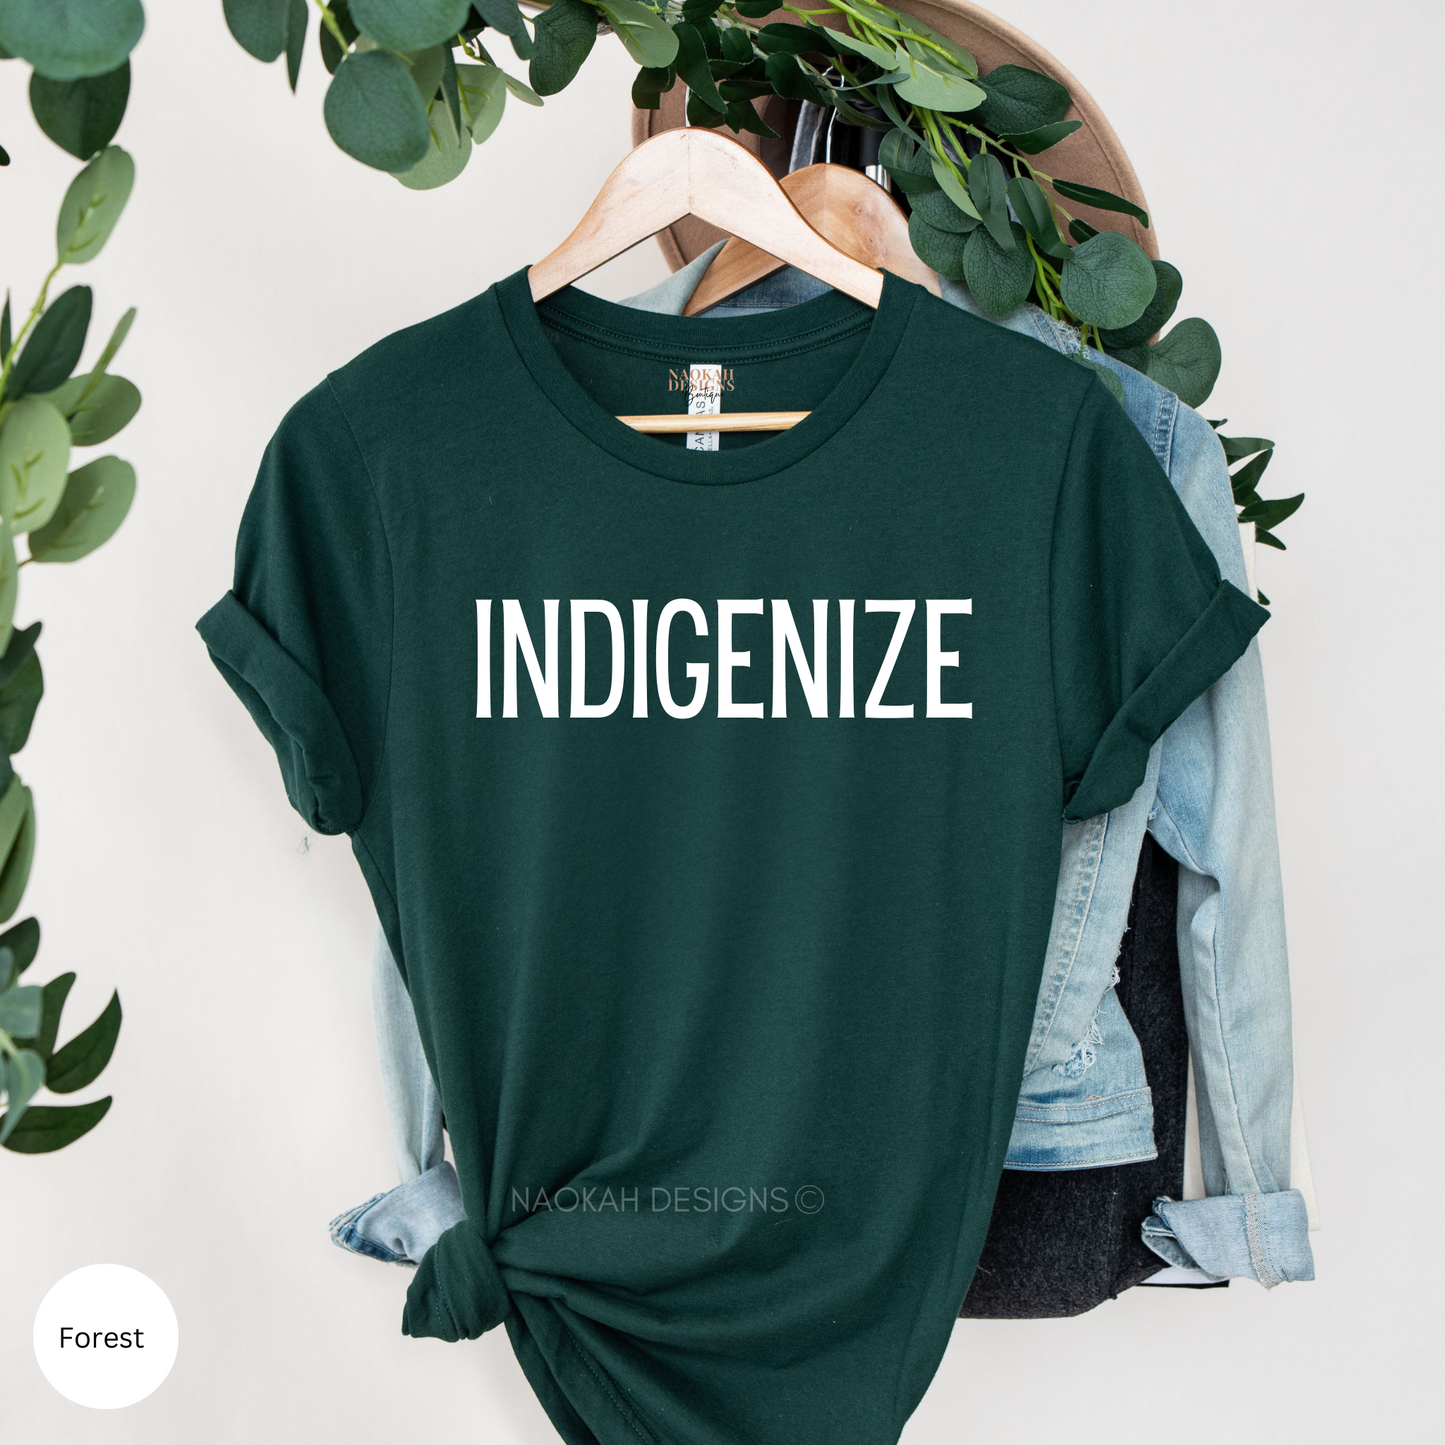 indigenize shirt